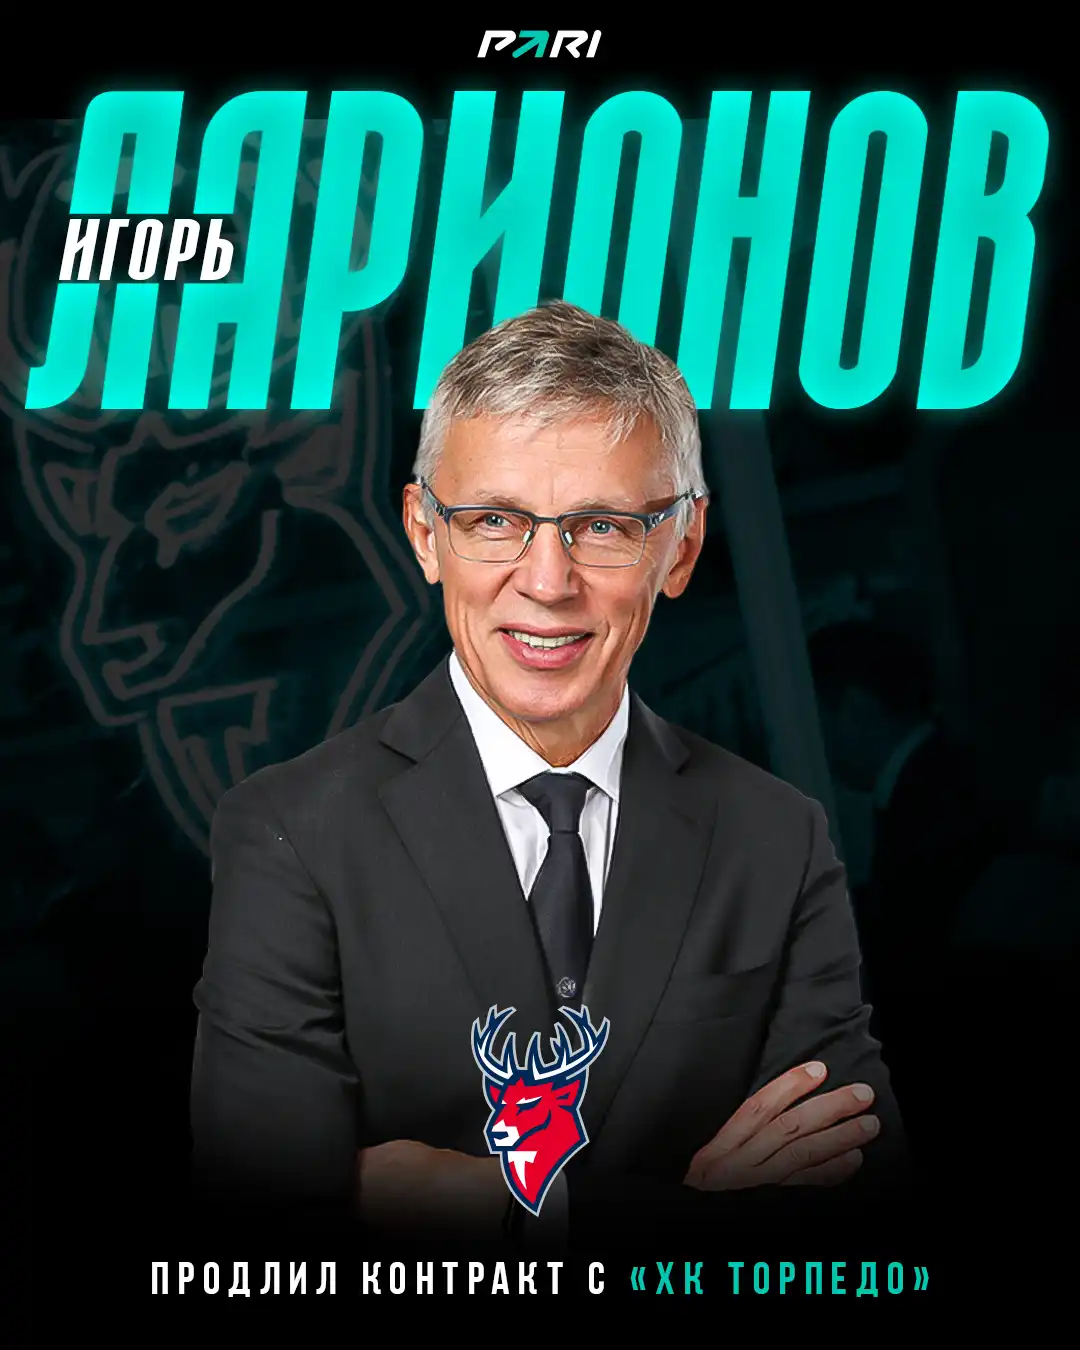 Легендарный Игорь Ларионов продлил контракт с партнером PARI ХК Торпедо